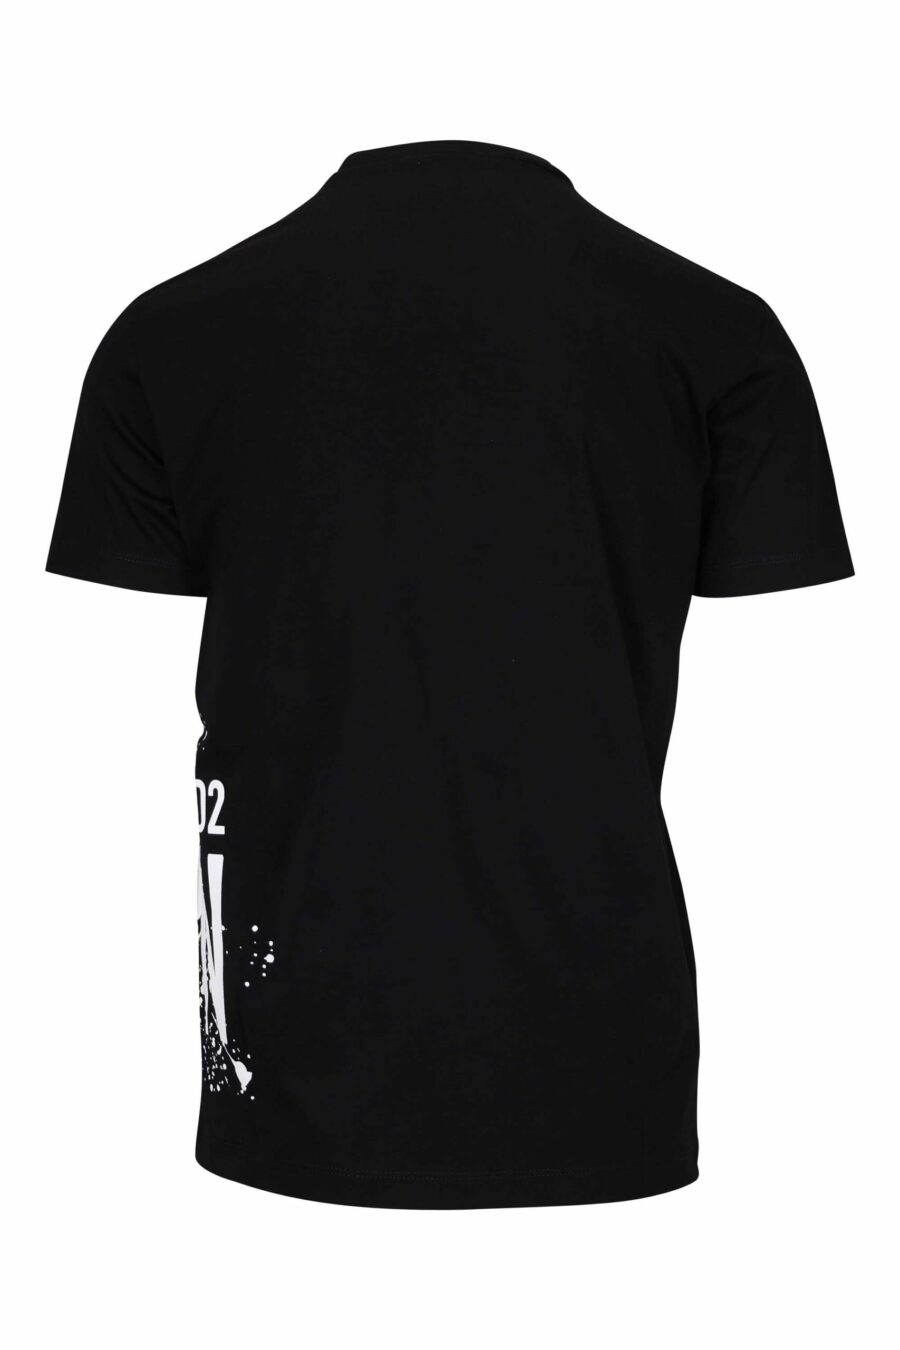 T-shirt noir avec maxilogo "icon splash" en dessous - 8054148293758 1 scaled